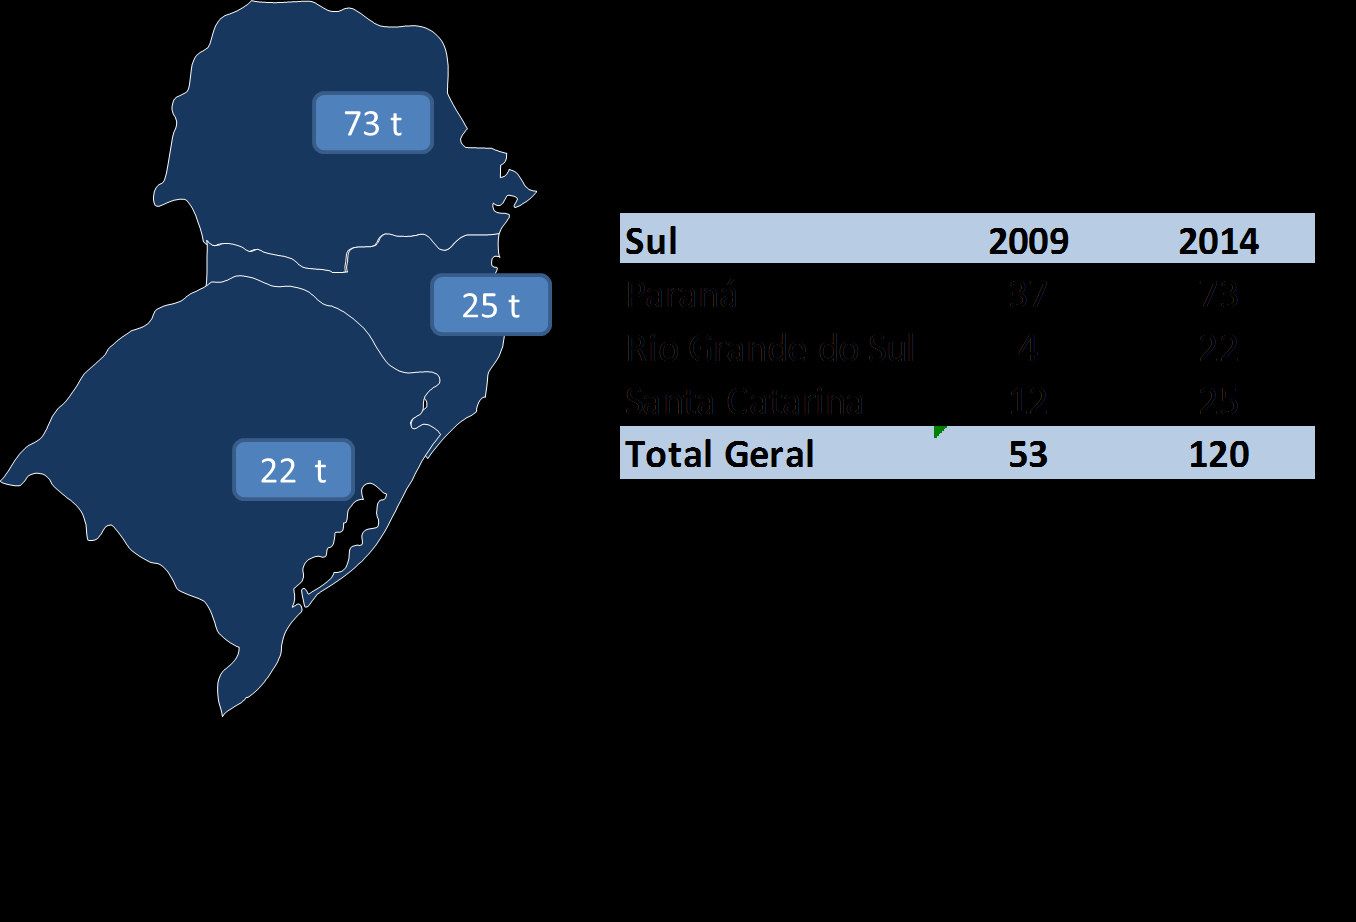 Mercado Sul: 129 t 40 t 11 t - 20% da venda de Cordoalha engraxada - Total da